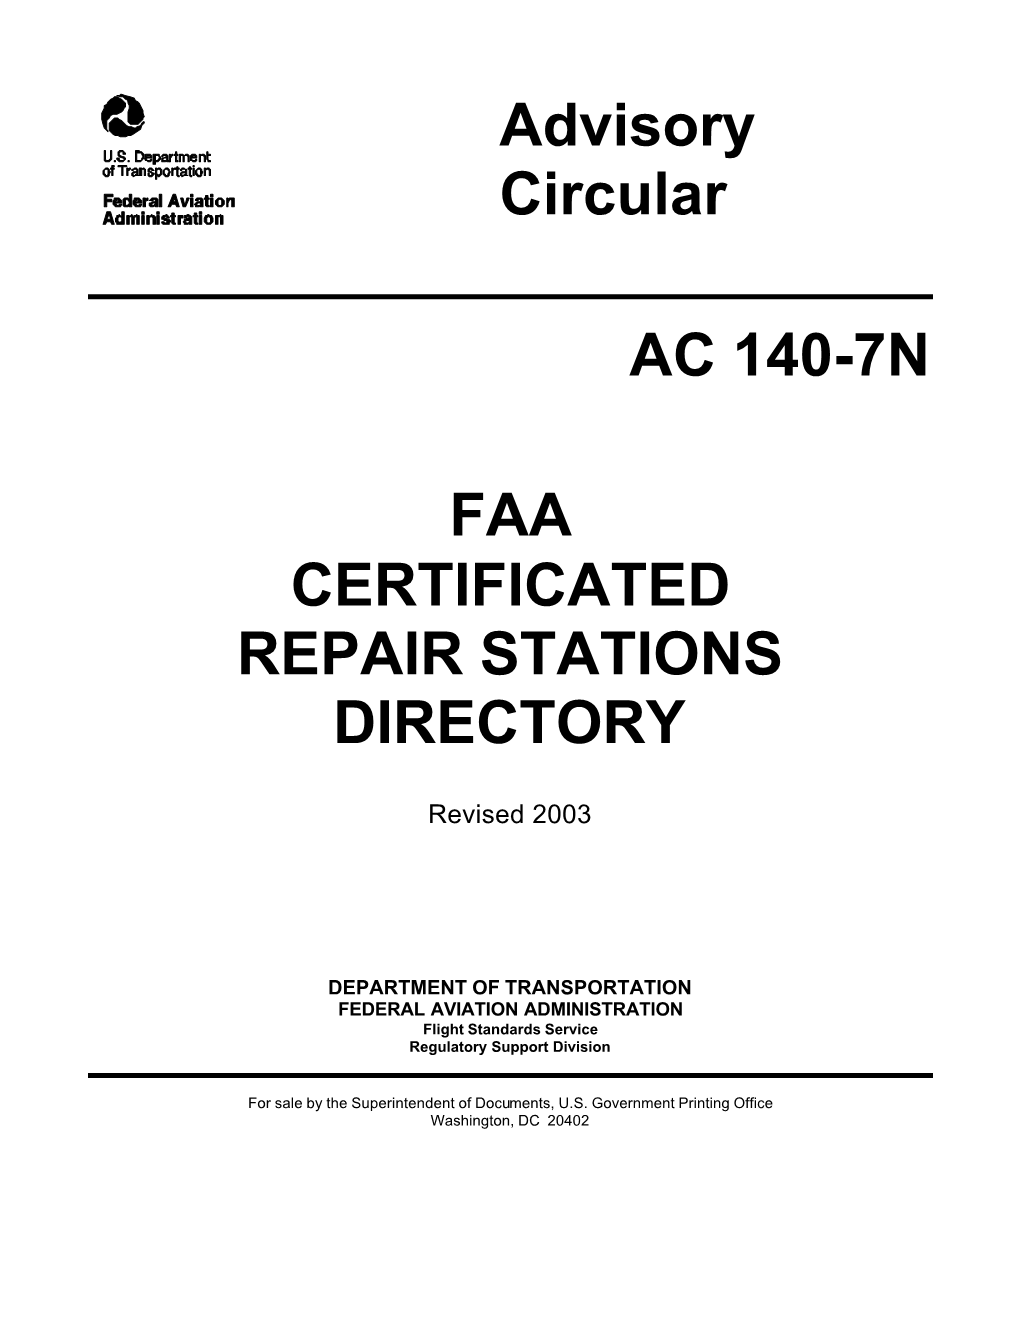 Advisory Circular AC 140-7N FAA CERTIFICATED REPAIR